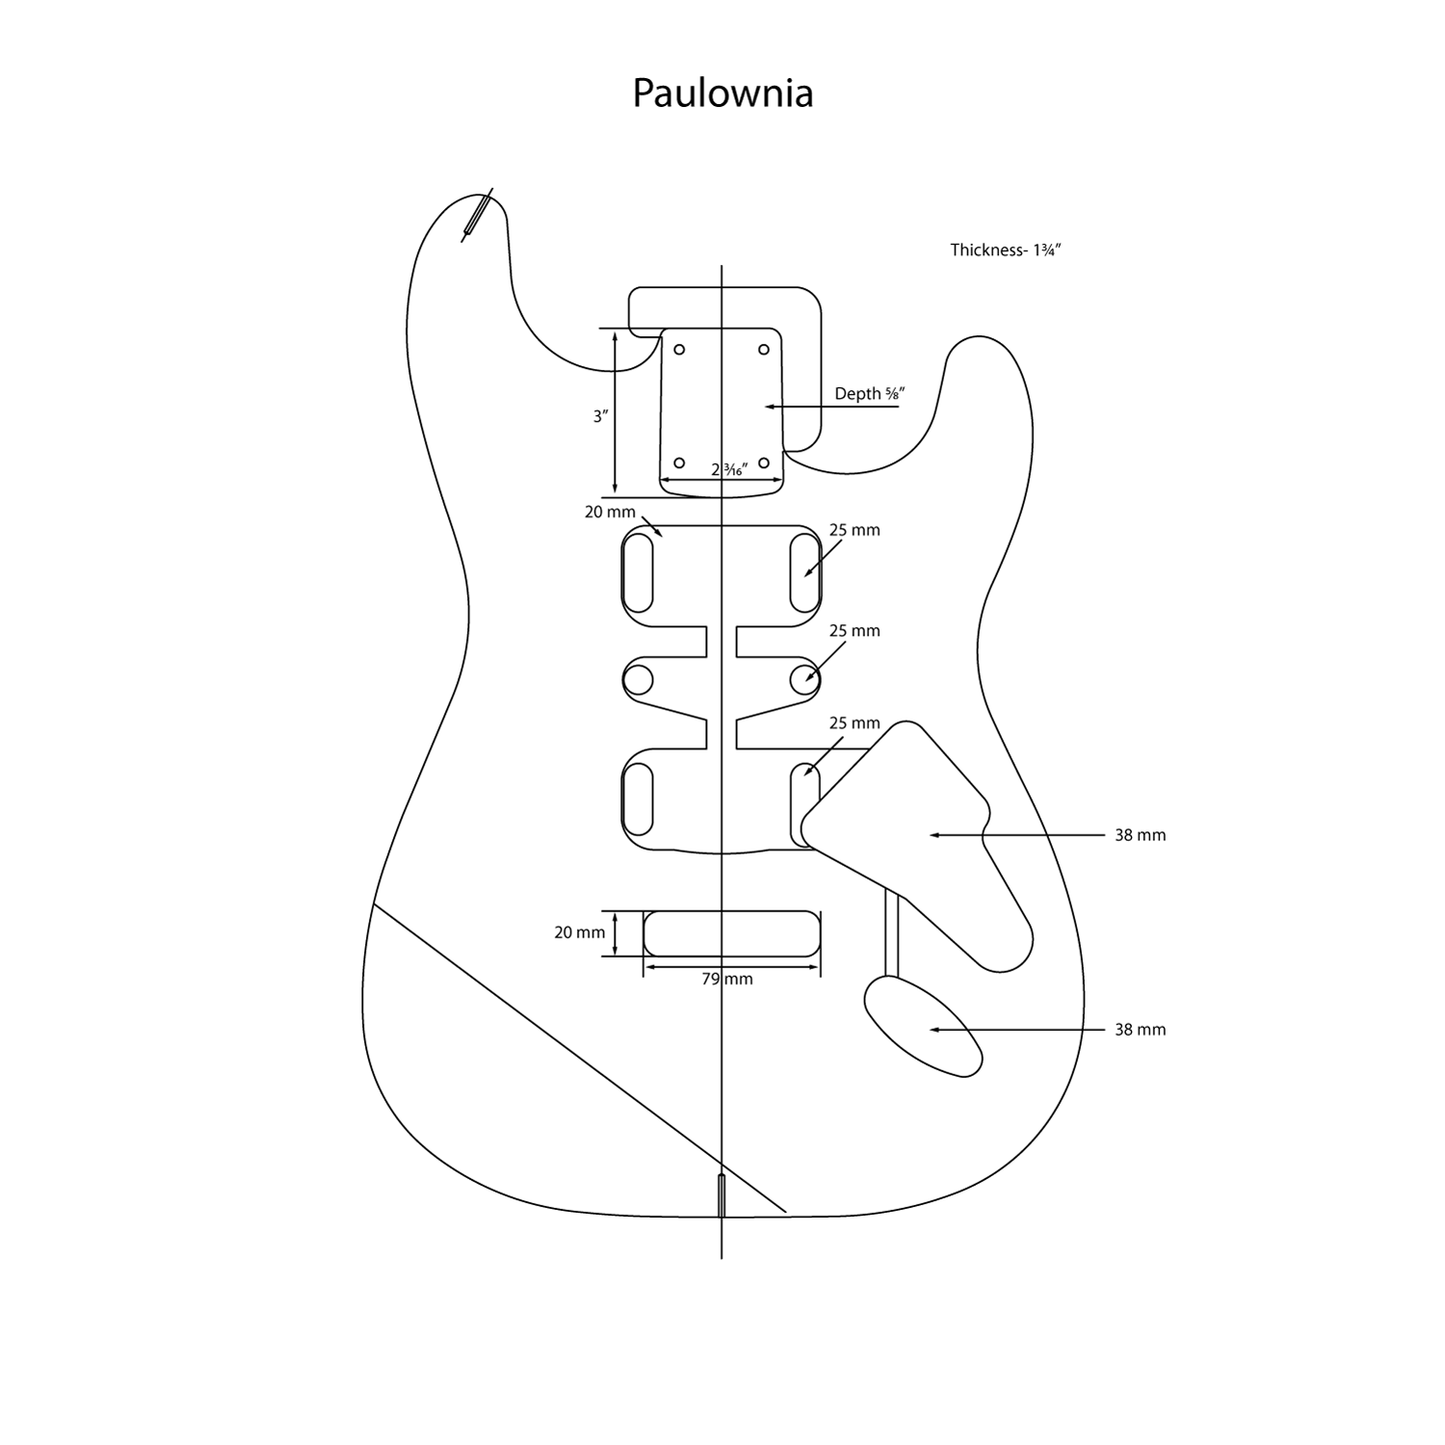 AE Guitars® S-Style Paulownia Replacement Guitar Body Graffiti Yellow